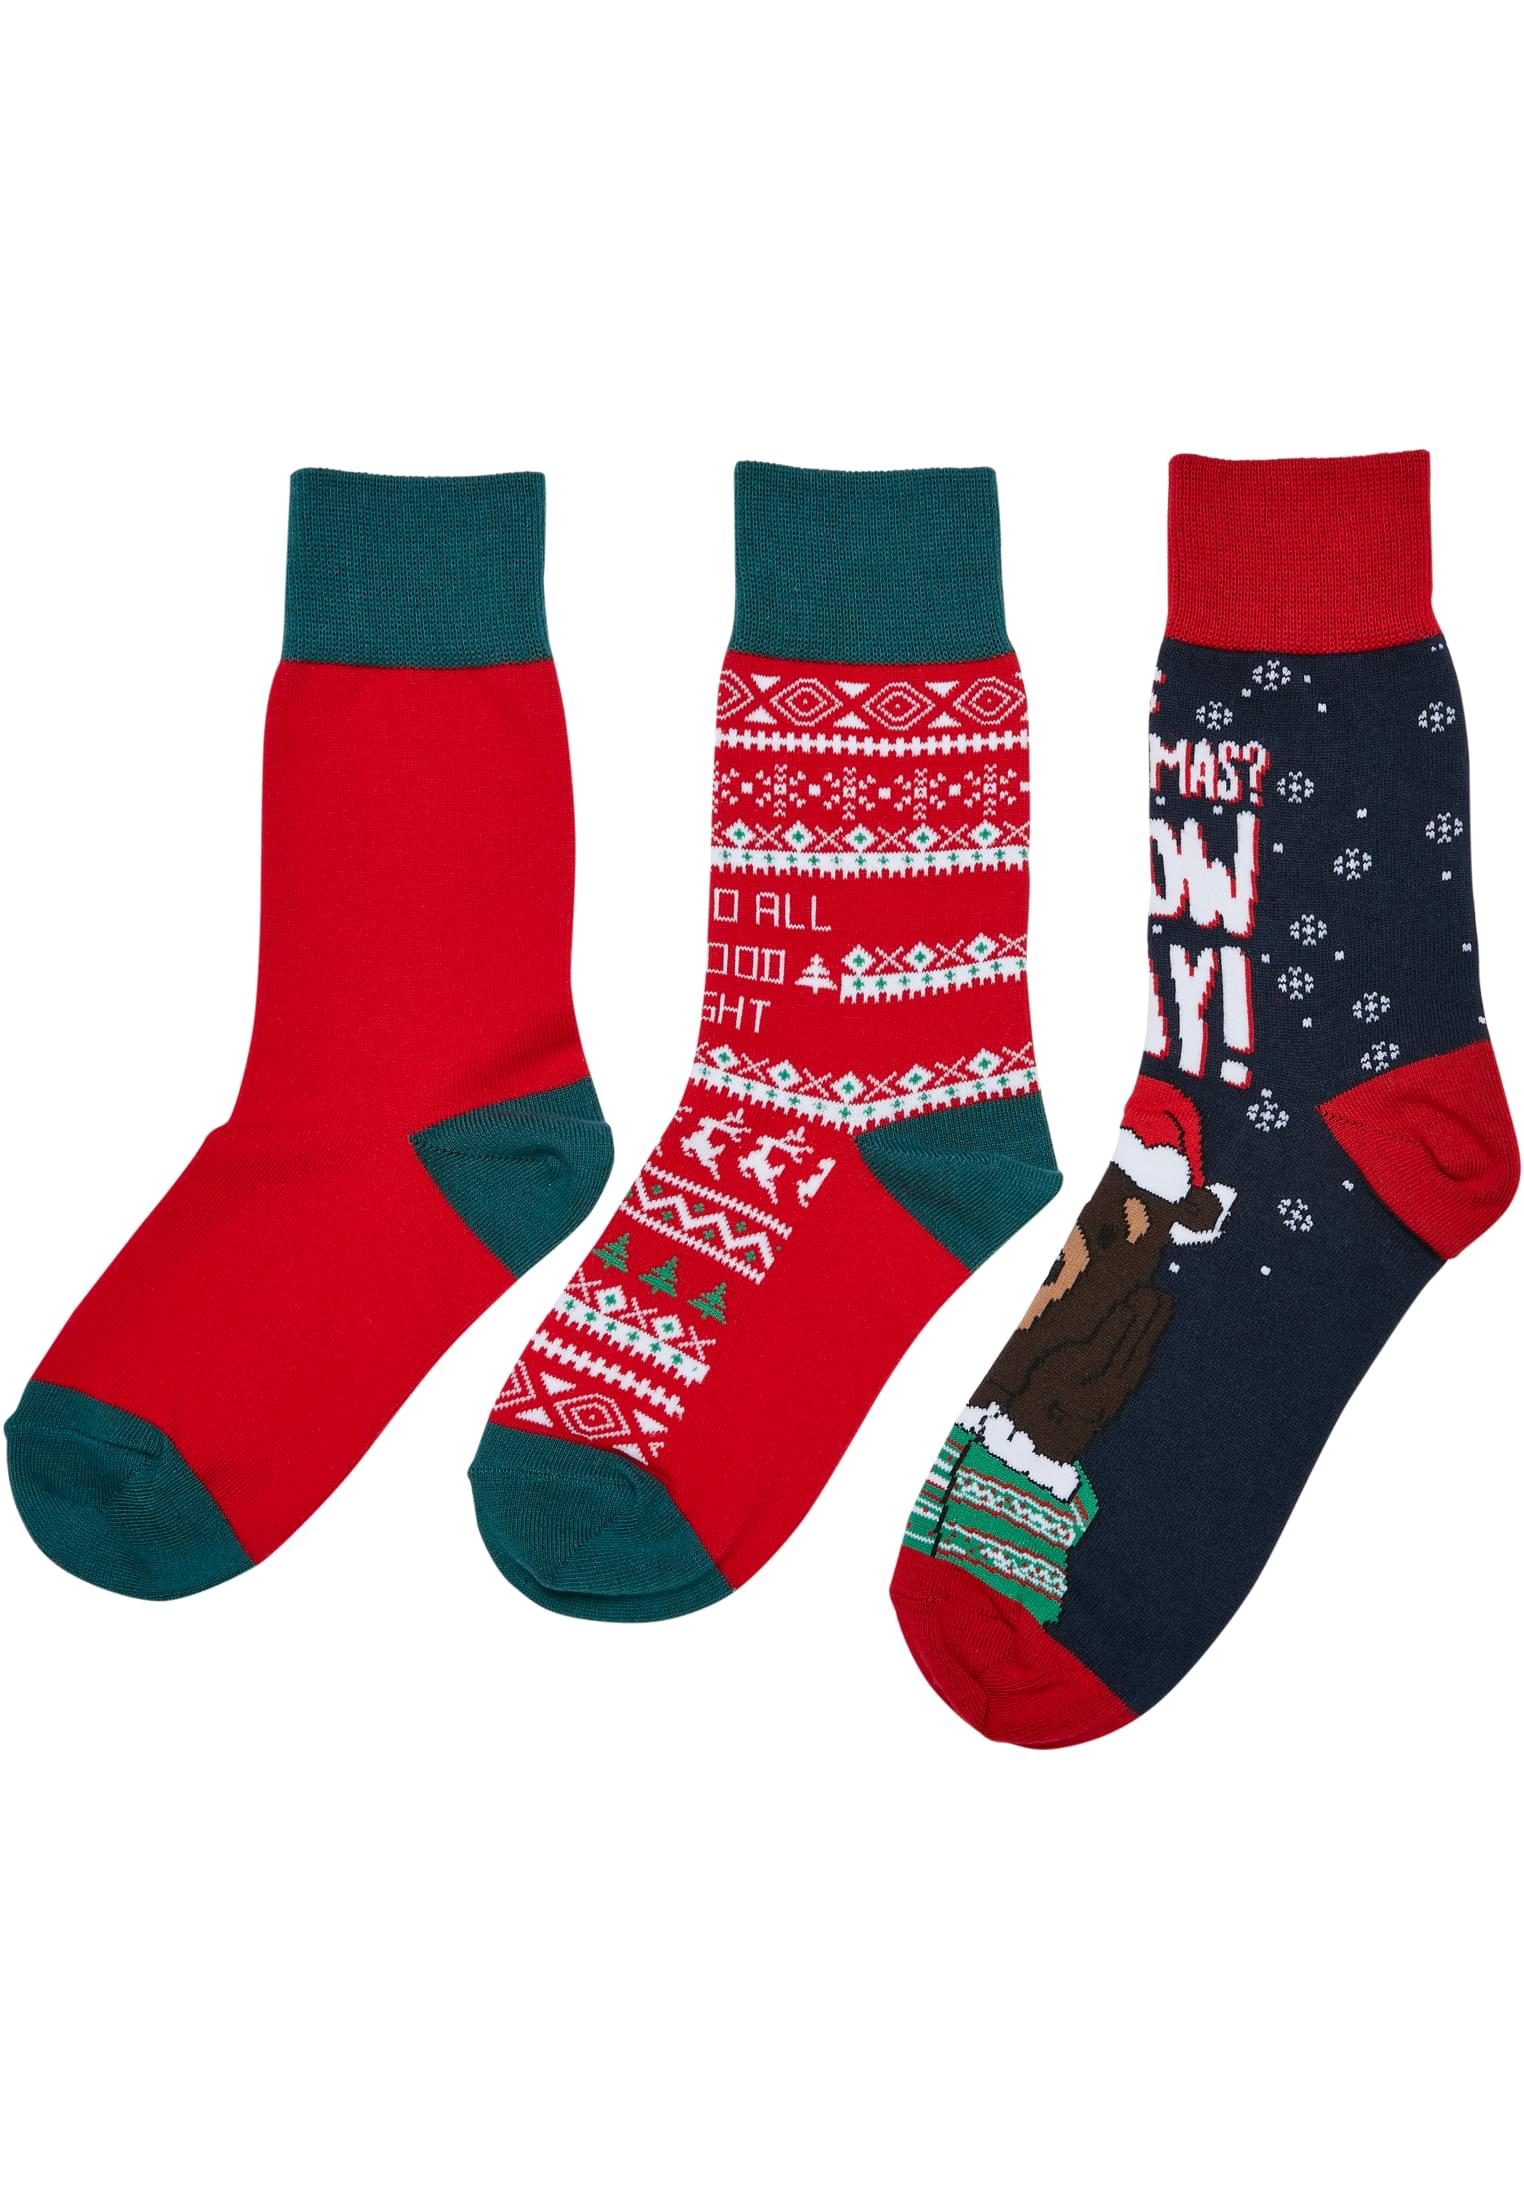 Children's Christmas Bears Socks - 3-Pack Multicolored